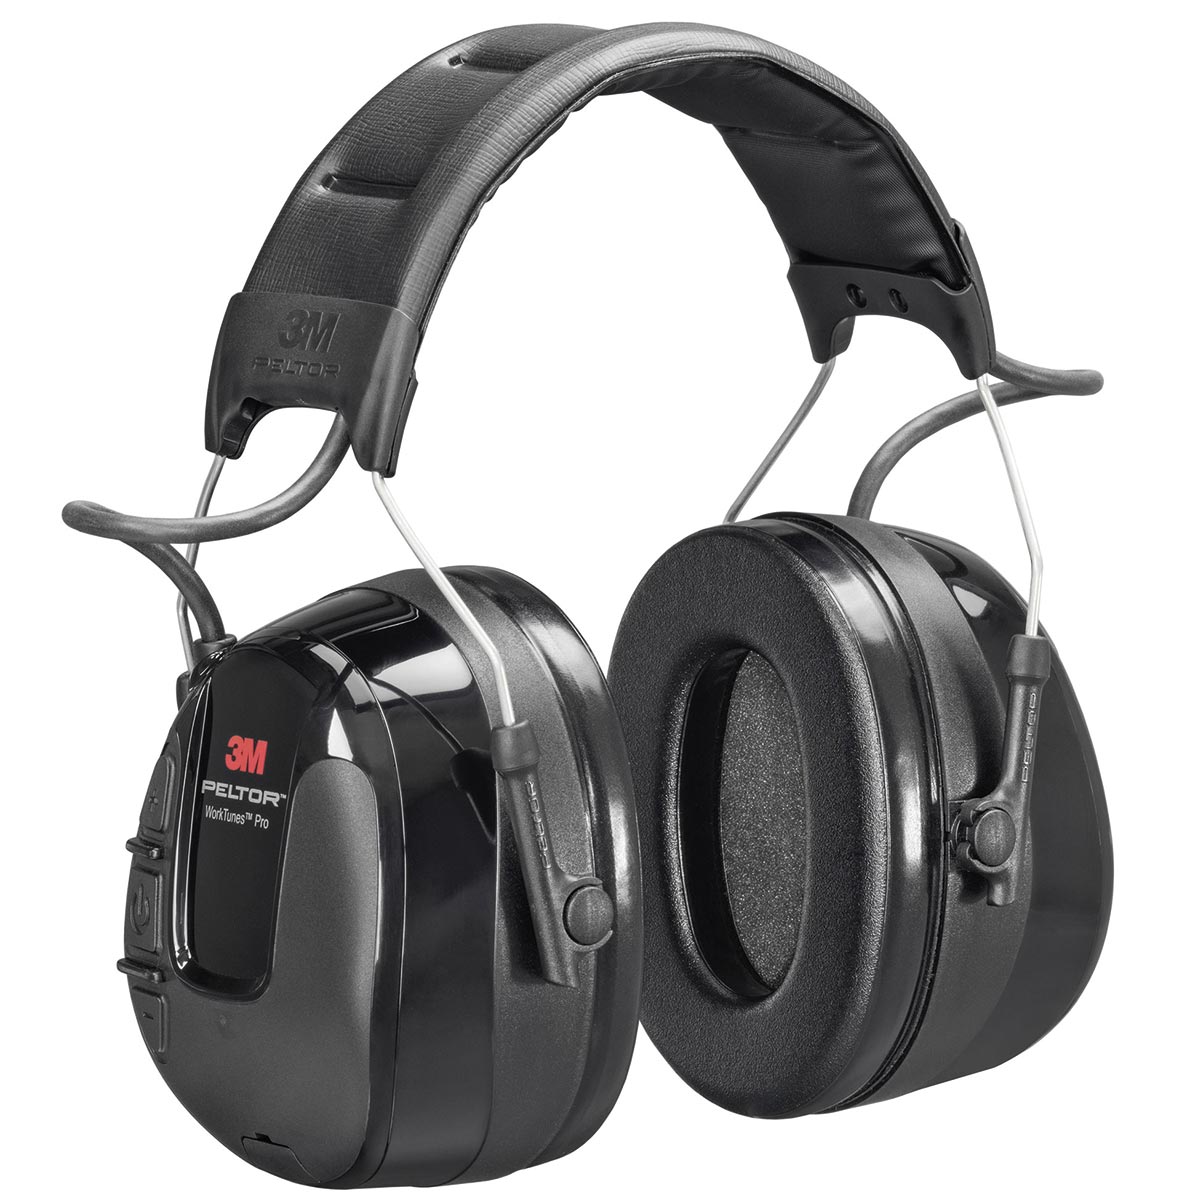 Protection auditive avec la radio stéréo fm Peltor WorkTunes Pro